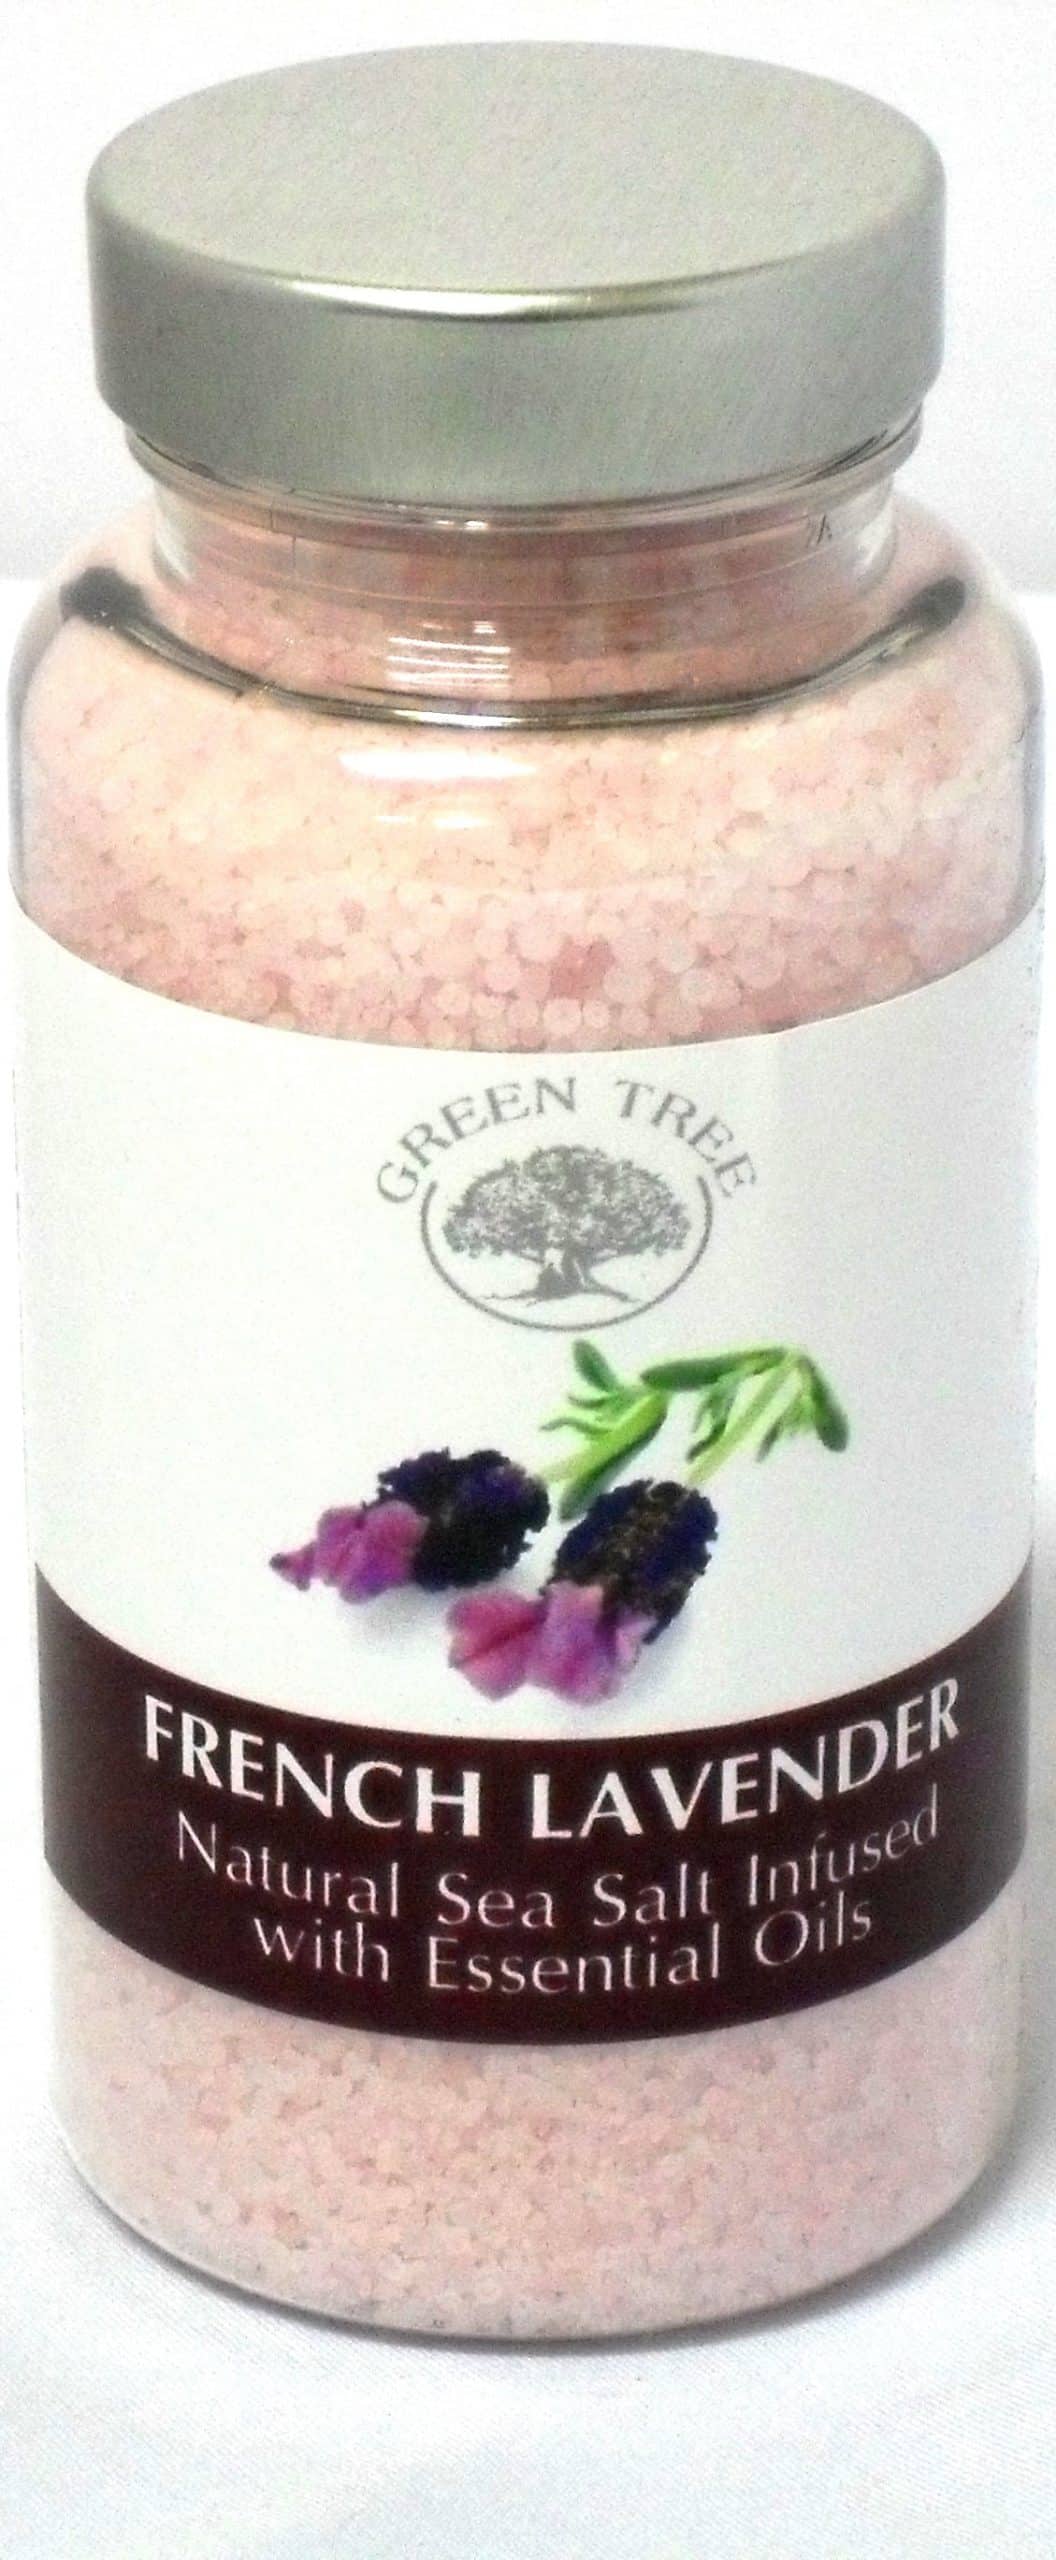 Green Tree Geurzout French Lavender (Inhoud 180 gram)